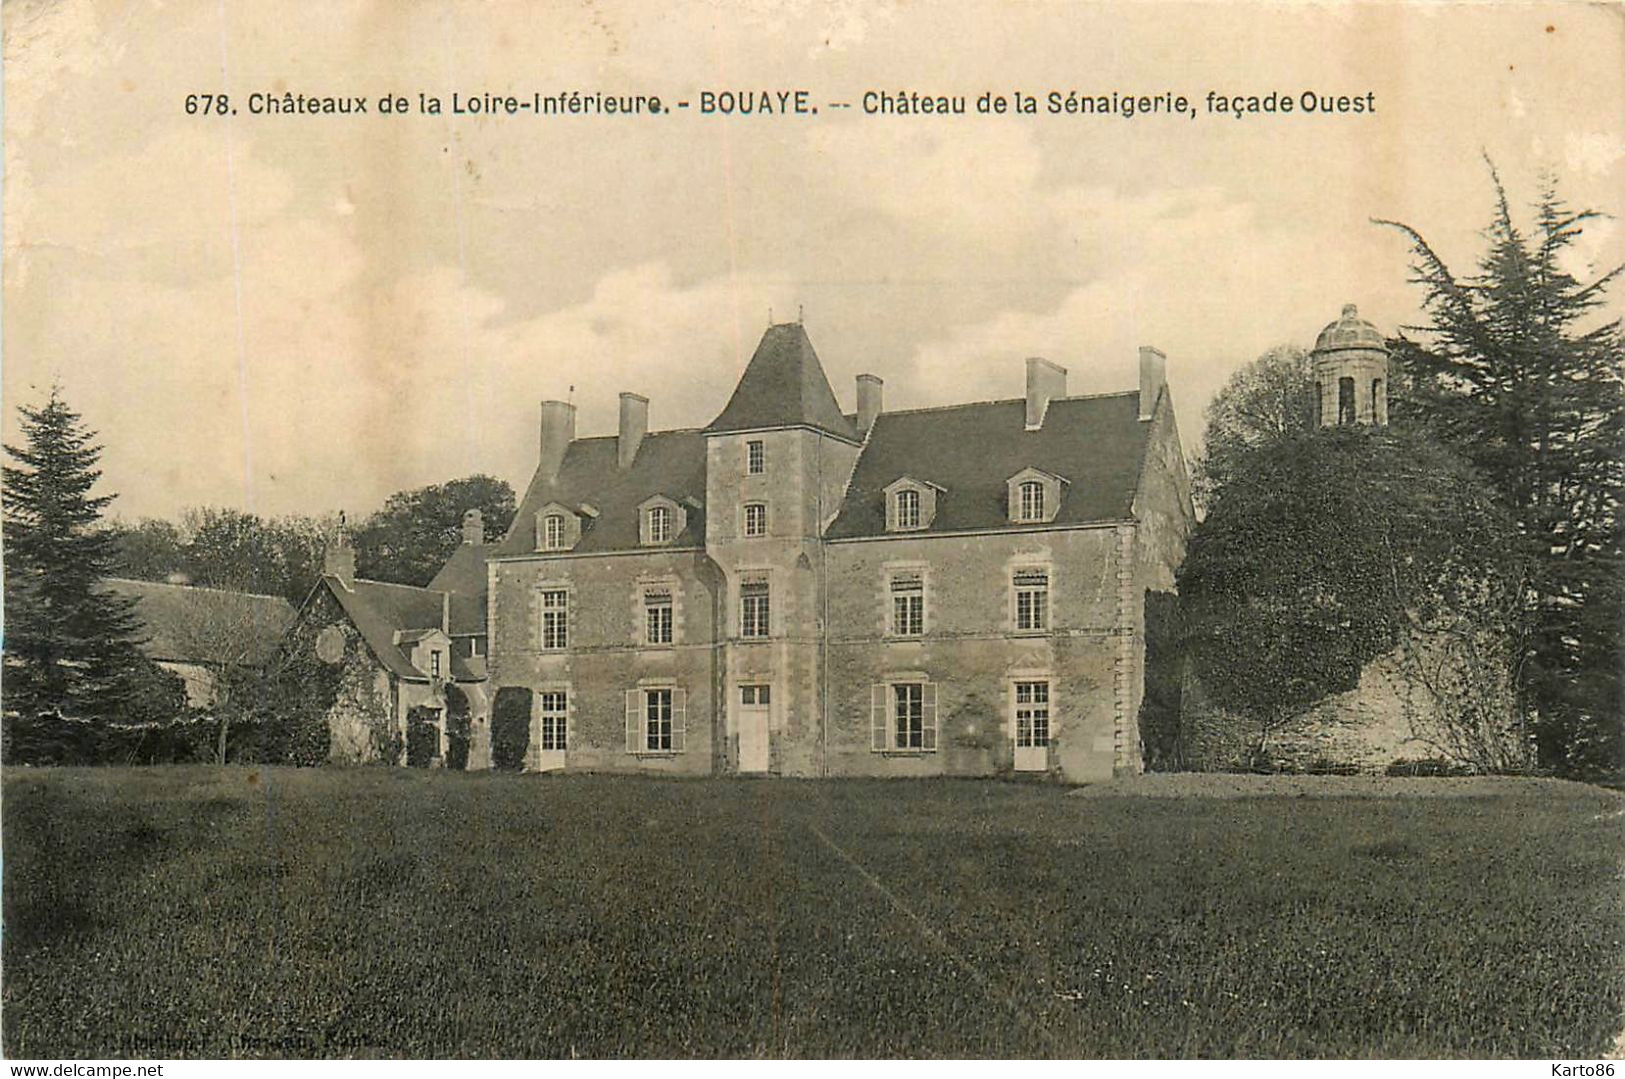 Bouaye * Le Château De La Sénaigerie , Façade Ouest * Château De La Loire Inférieure N°678 - Bouaye